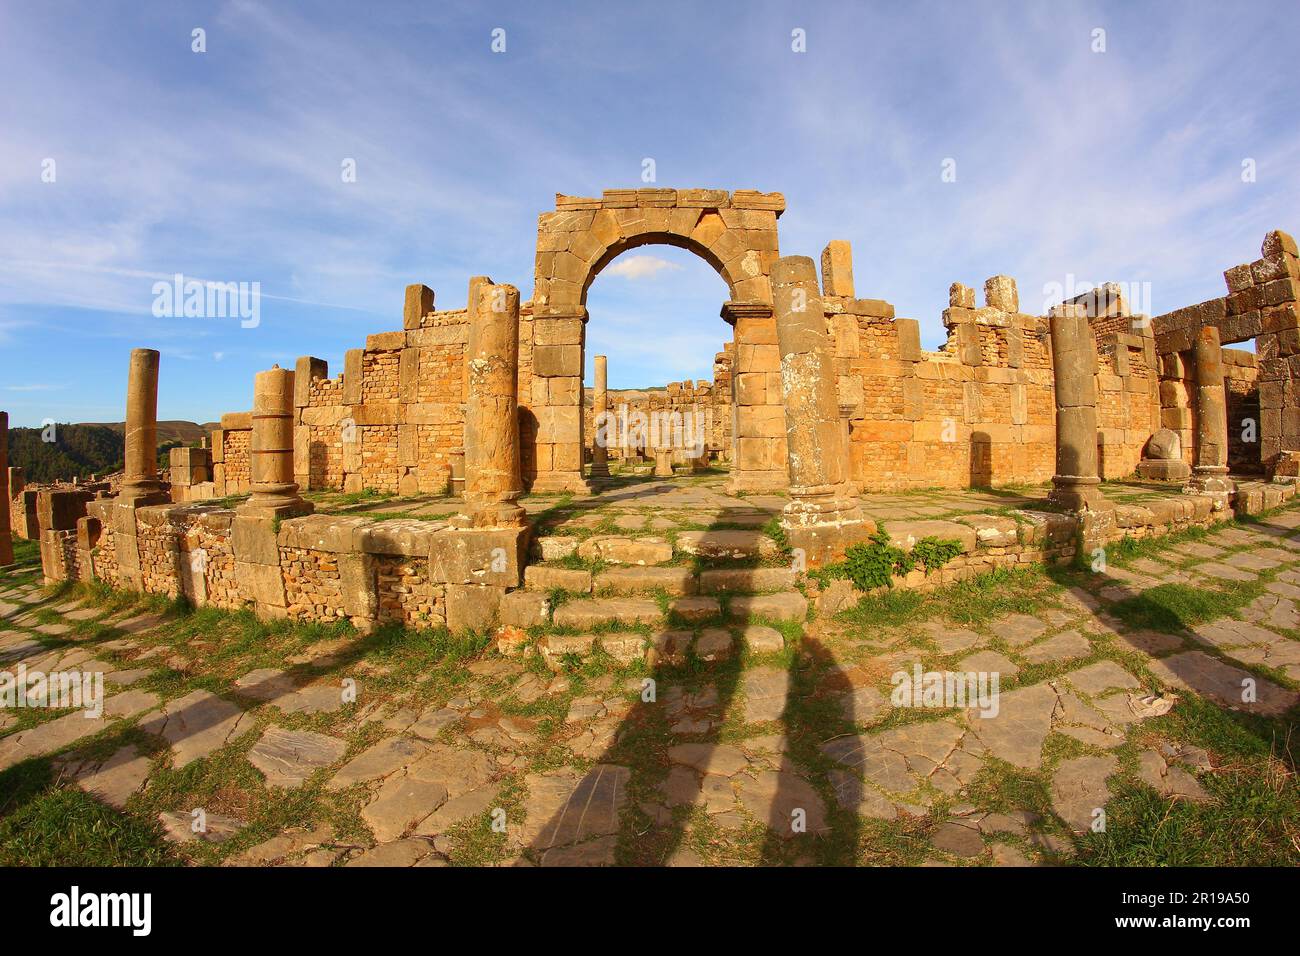 Ruines romaines de Djemila, Algérie. Marché en soirée. Banque D'Images